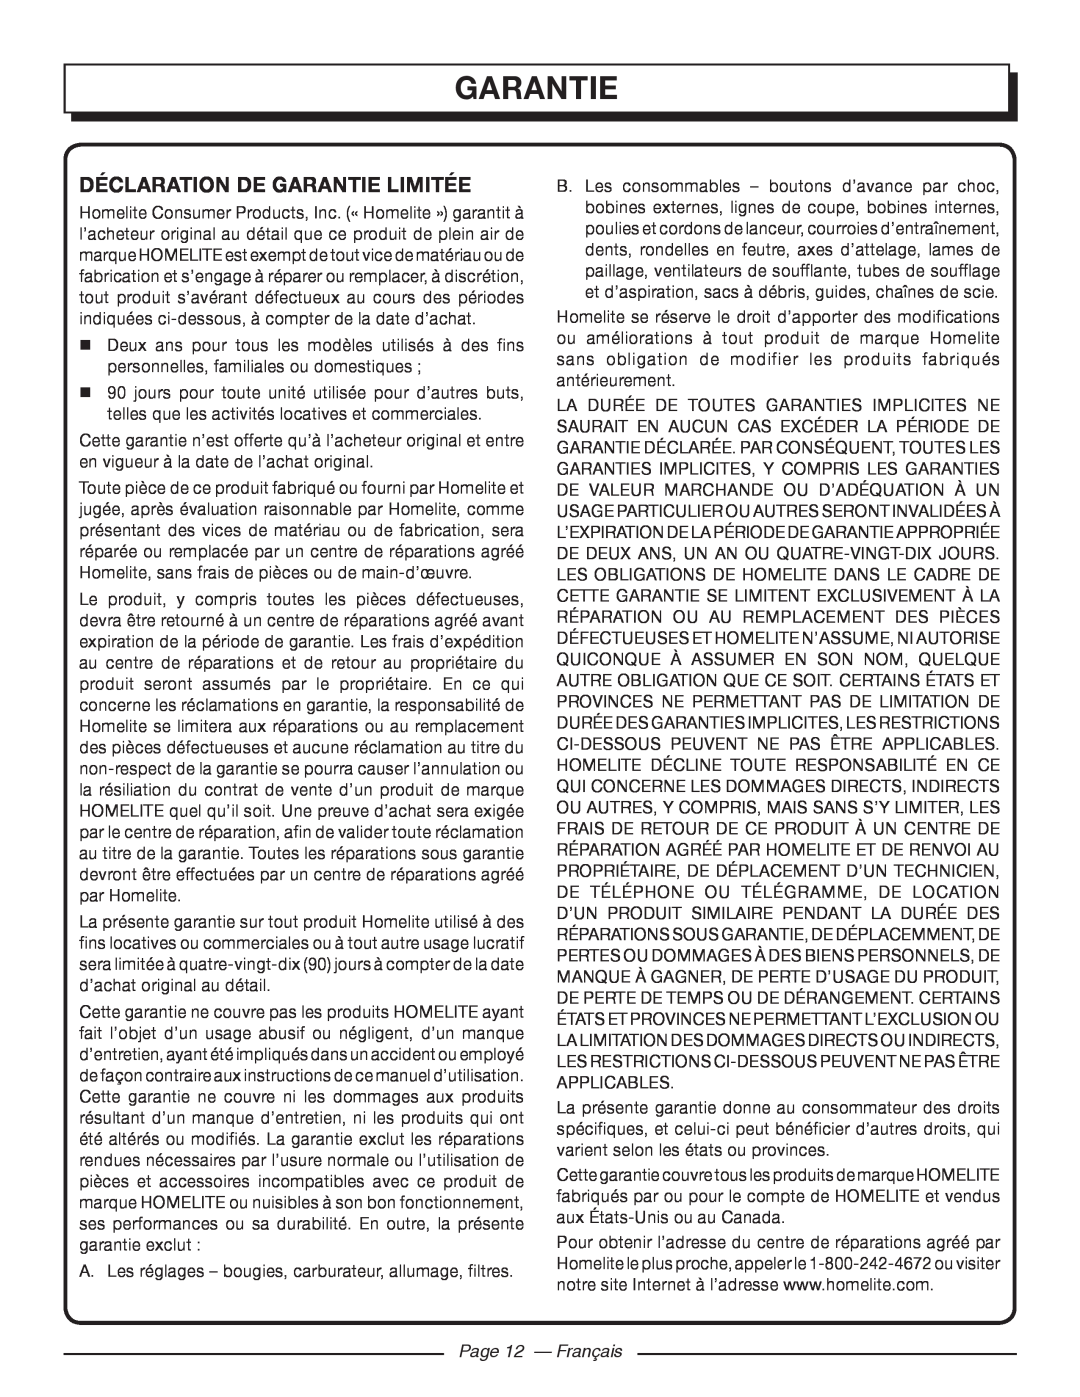 Homelite UT32650, UT32600 manuel dutilisation Déclaration De Garantie Limitée, Page 12 - Français 